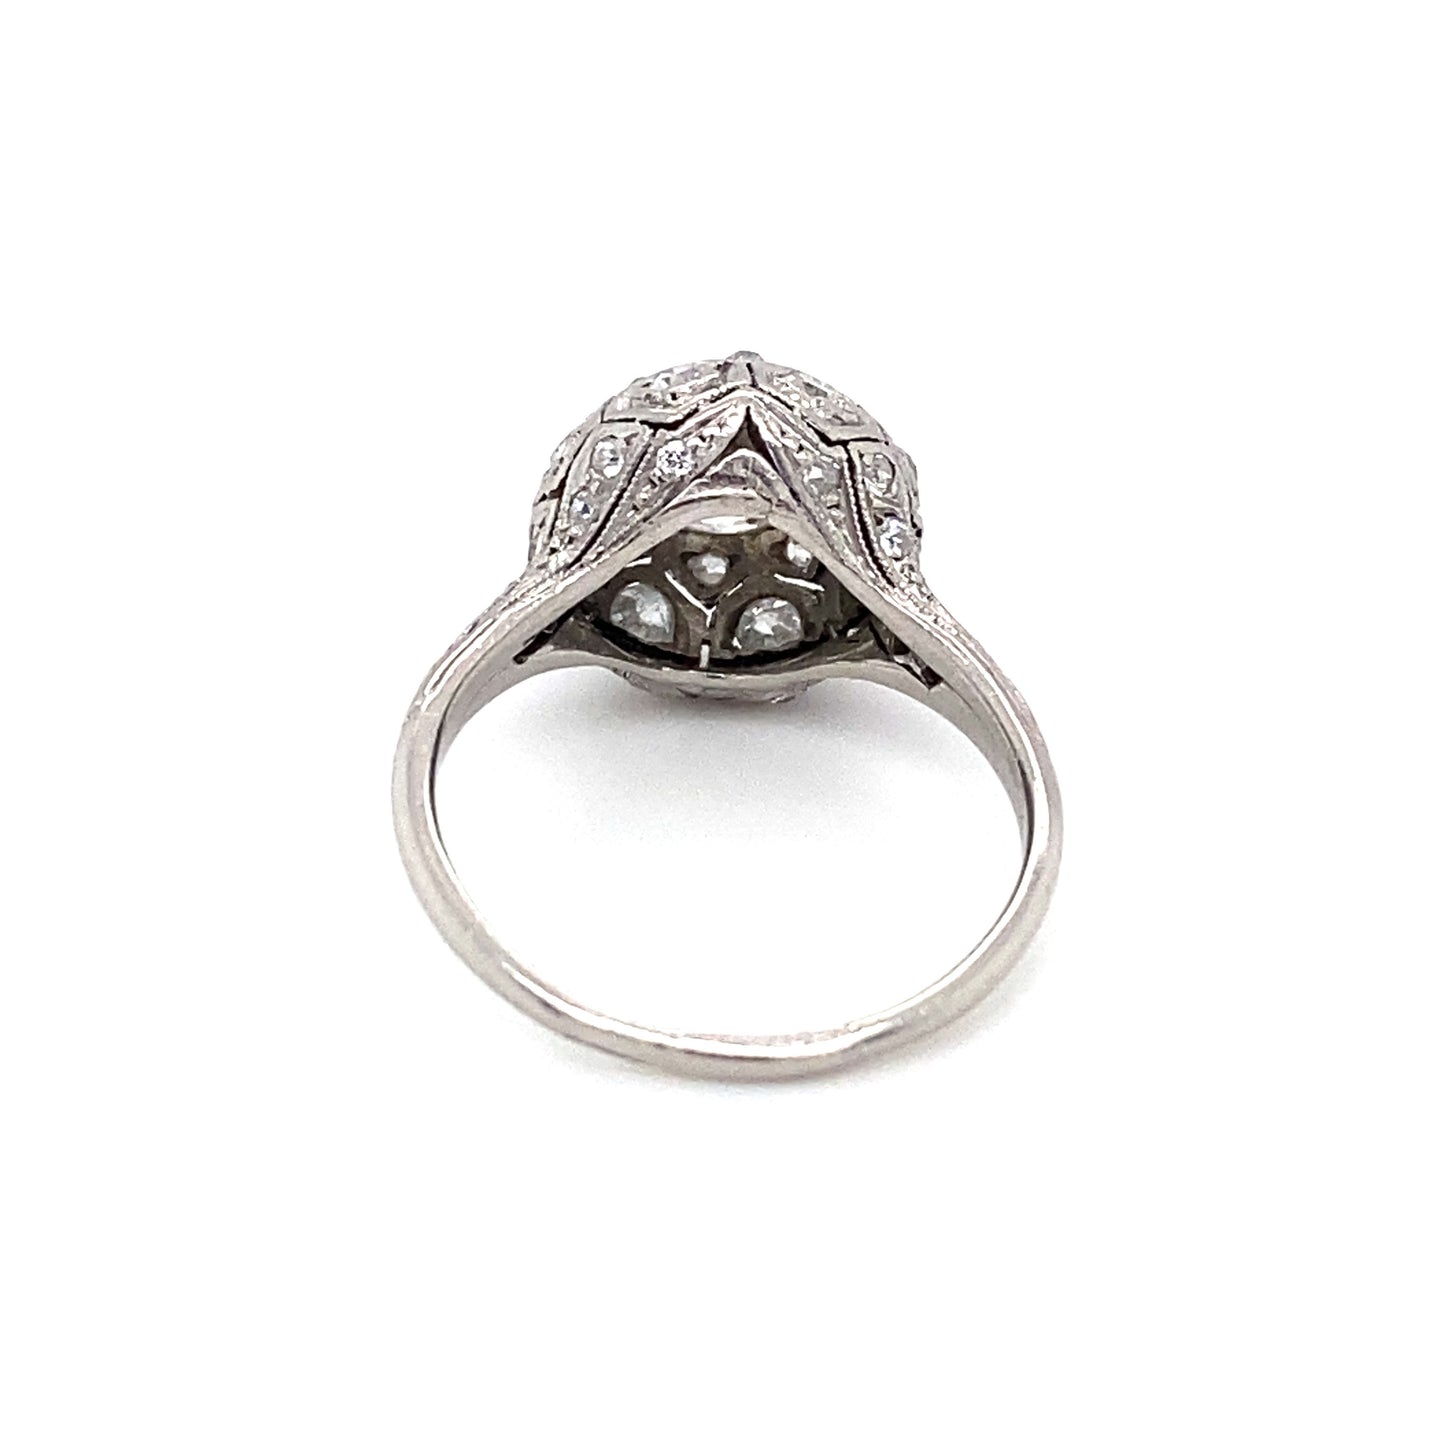 Circa 1920s Art Deco 1.20 Carat European Cut Diamond Engagement Ring in Platinum